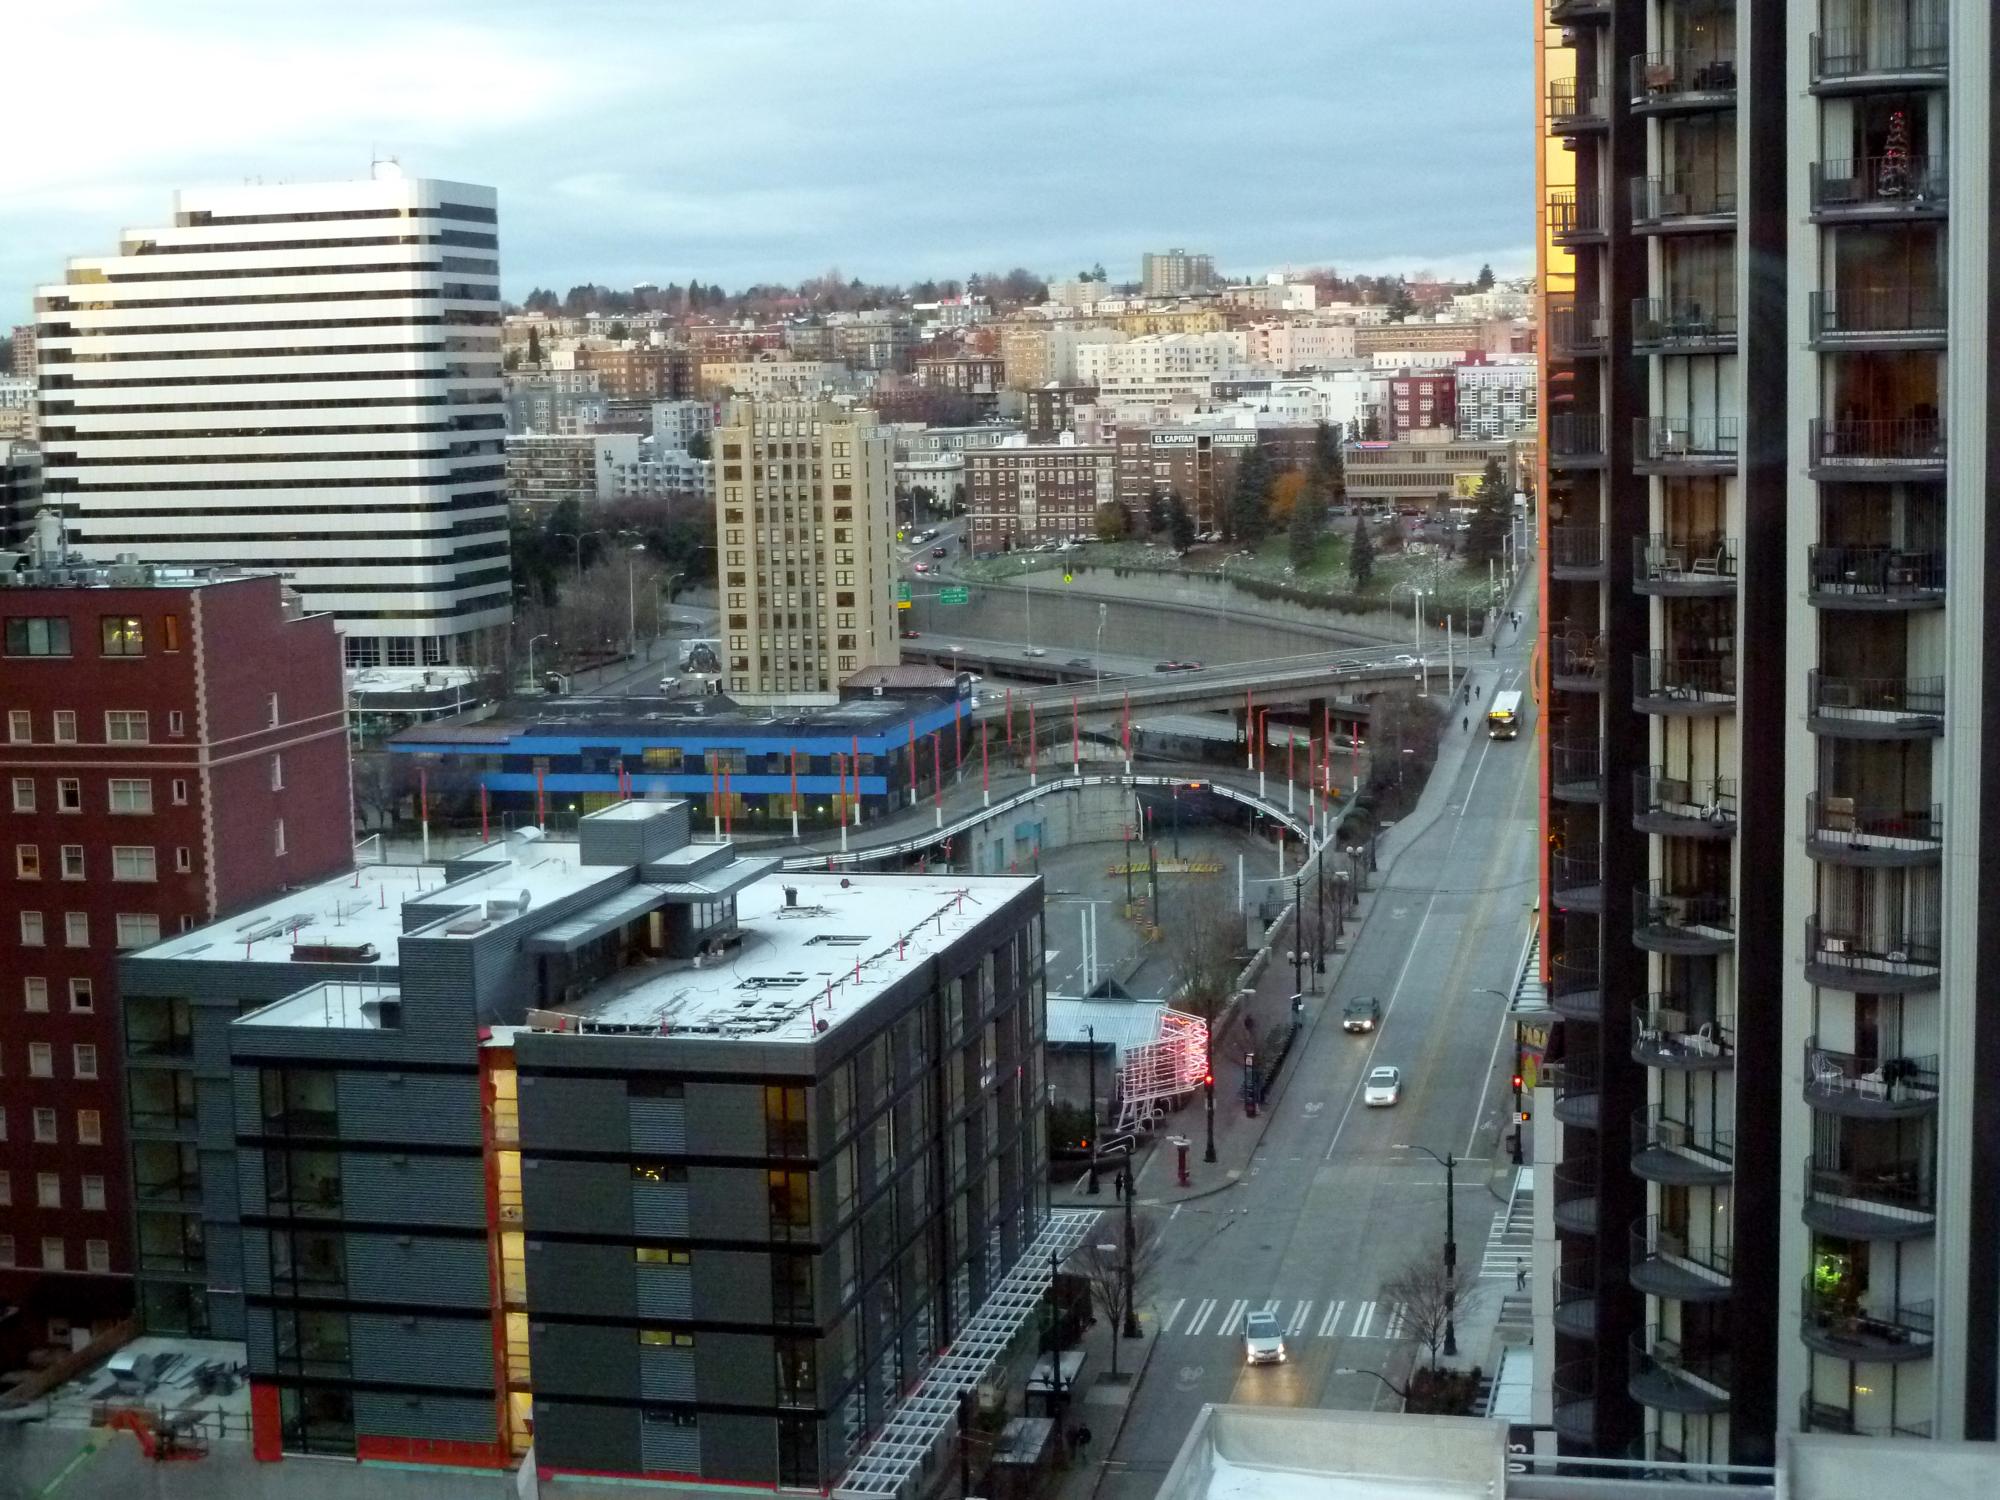 Seattle (2010-2019) - Hyatt Hotel View #1